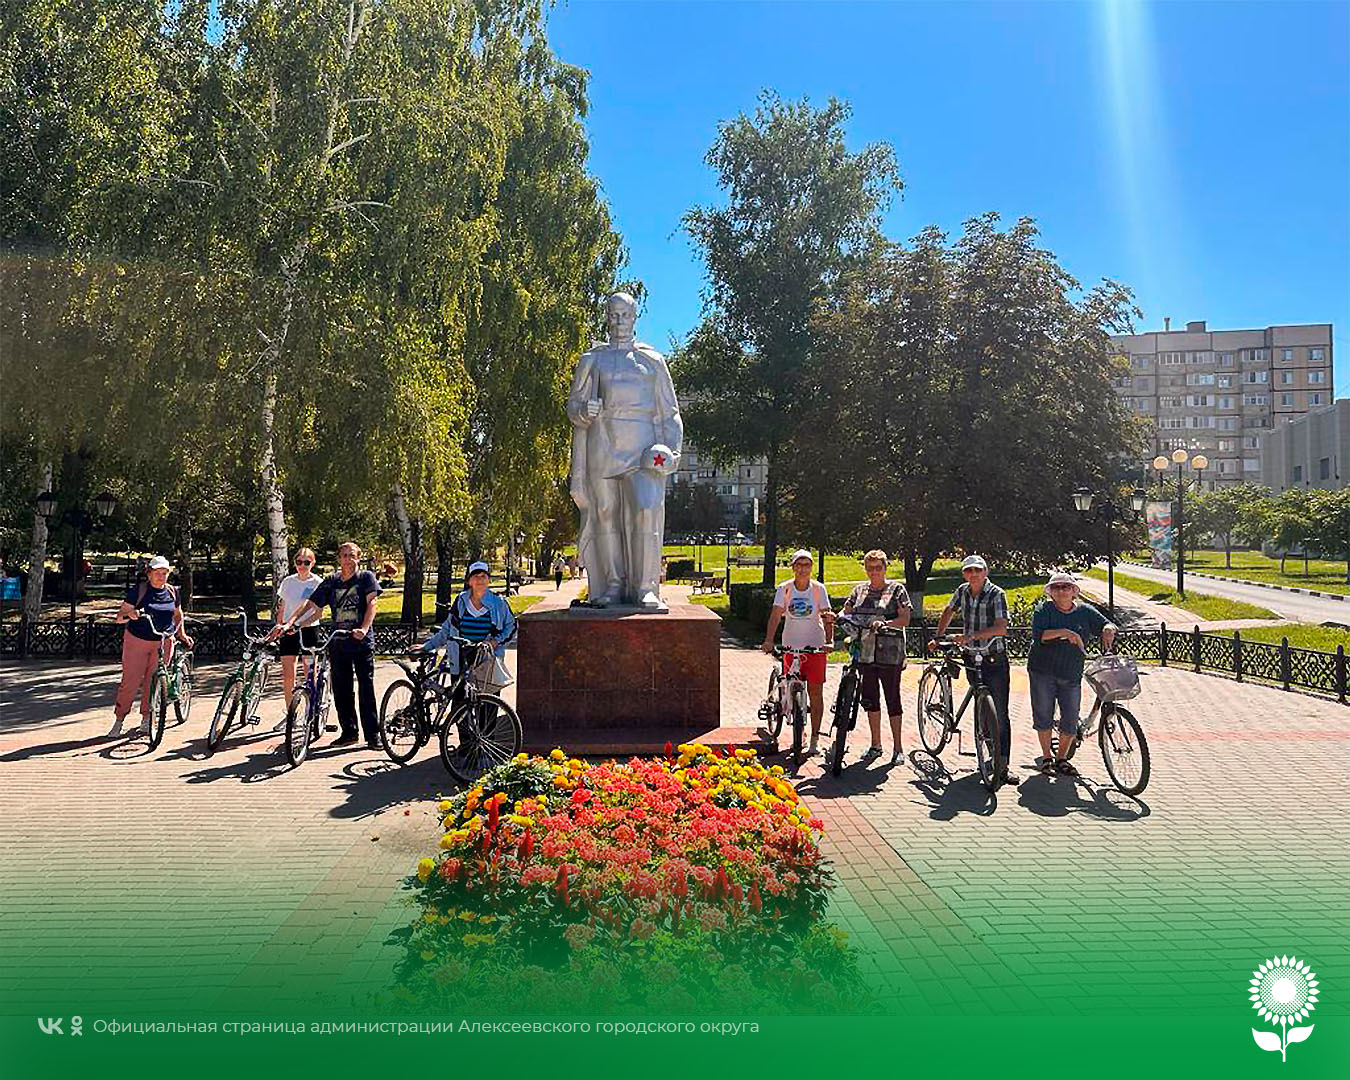 В преддверии празднования Дня города группа велотуристов «Хорошая компания» приняли участие в велопрогулке «По историческим местам города».